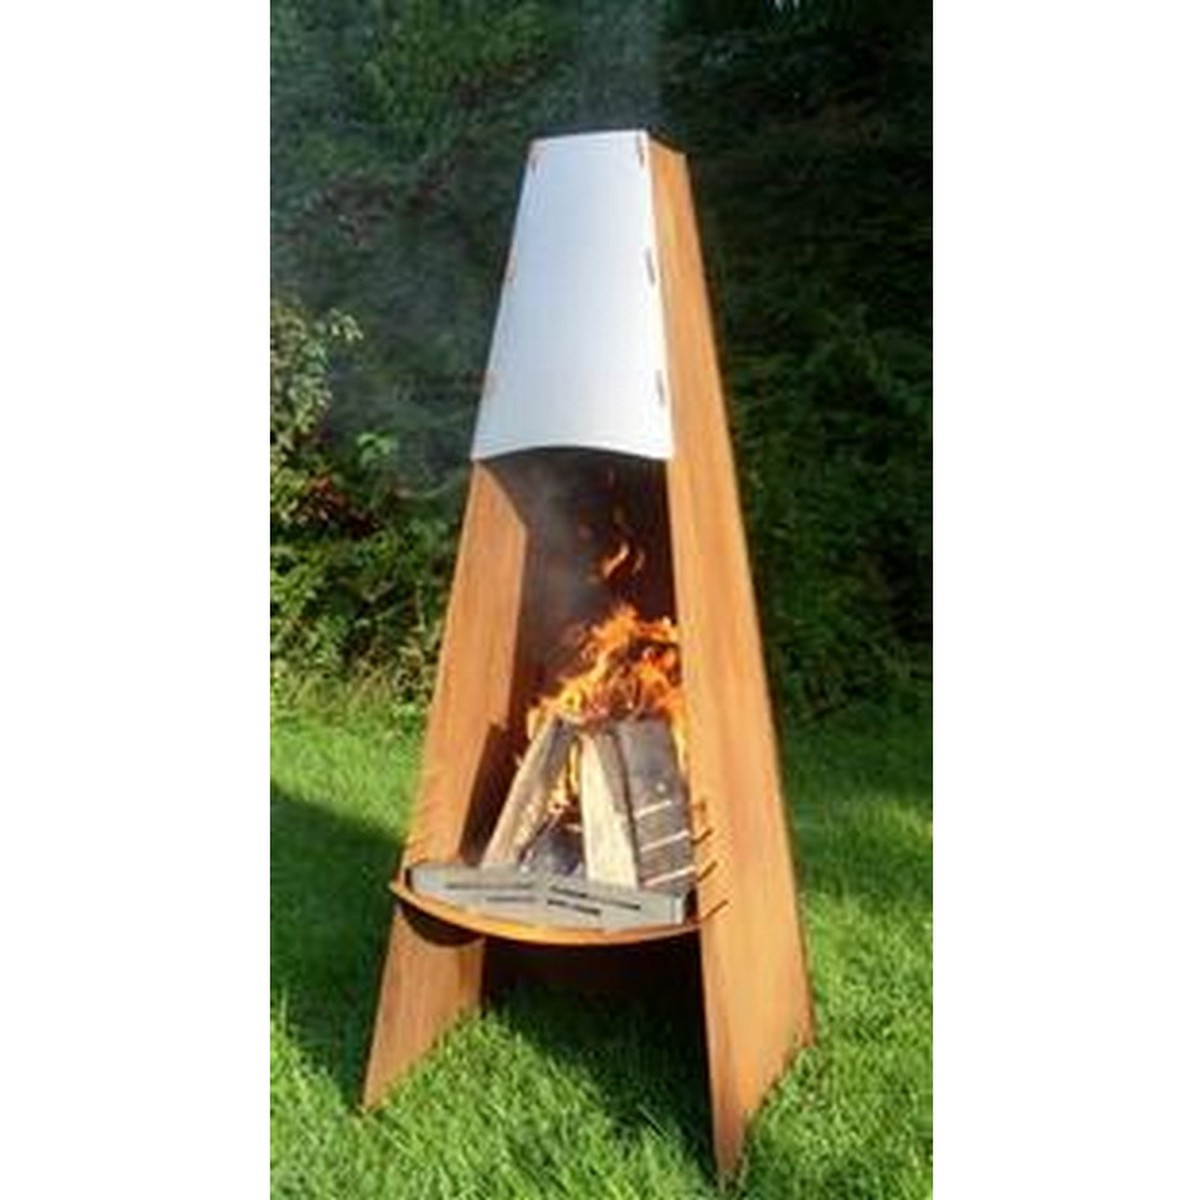  A Fireplace Grill à bois Fireplace A  